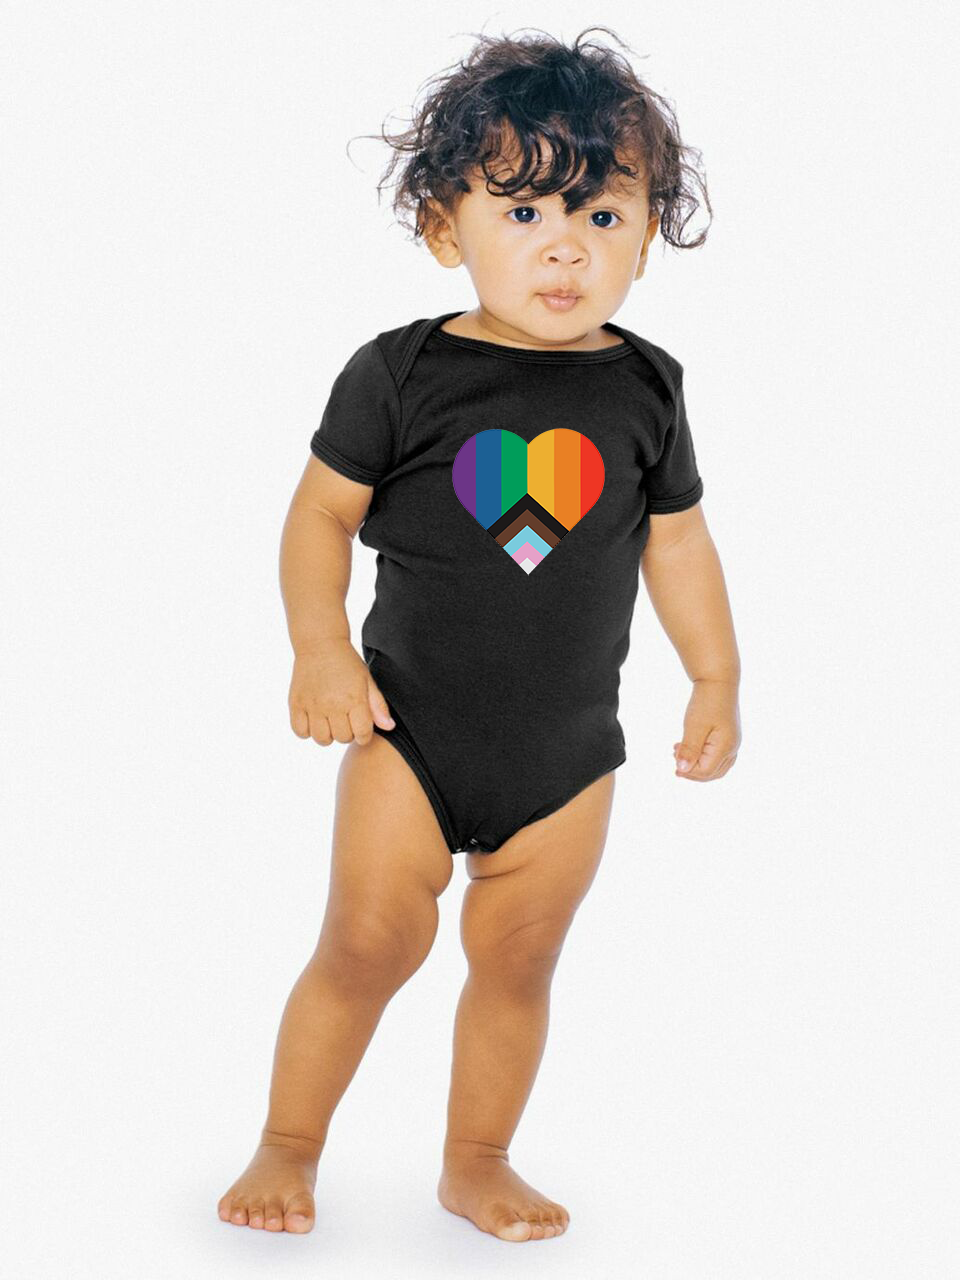 Baby wearing black pride hearth onesie